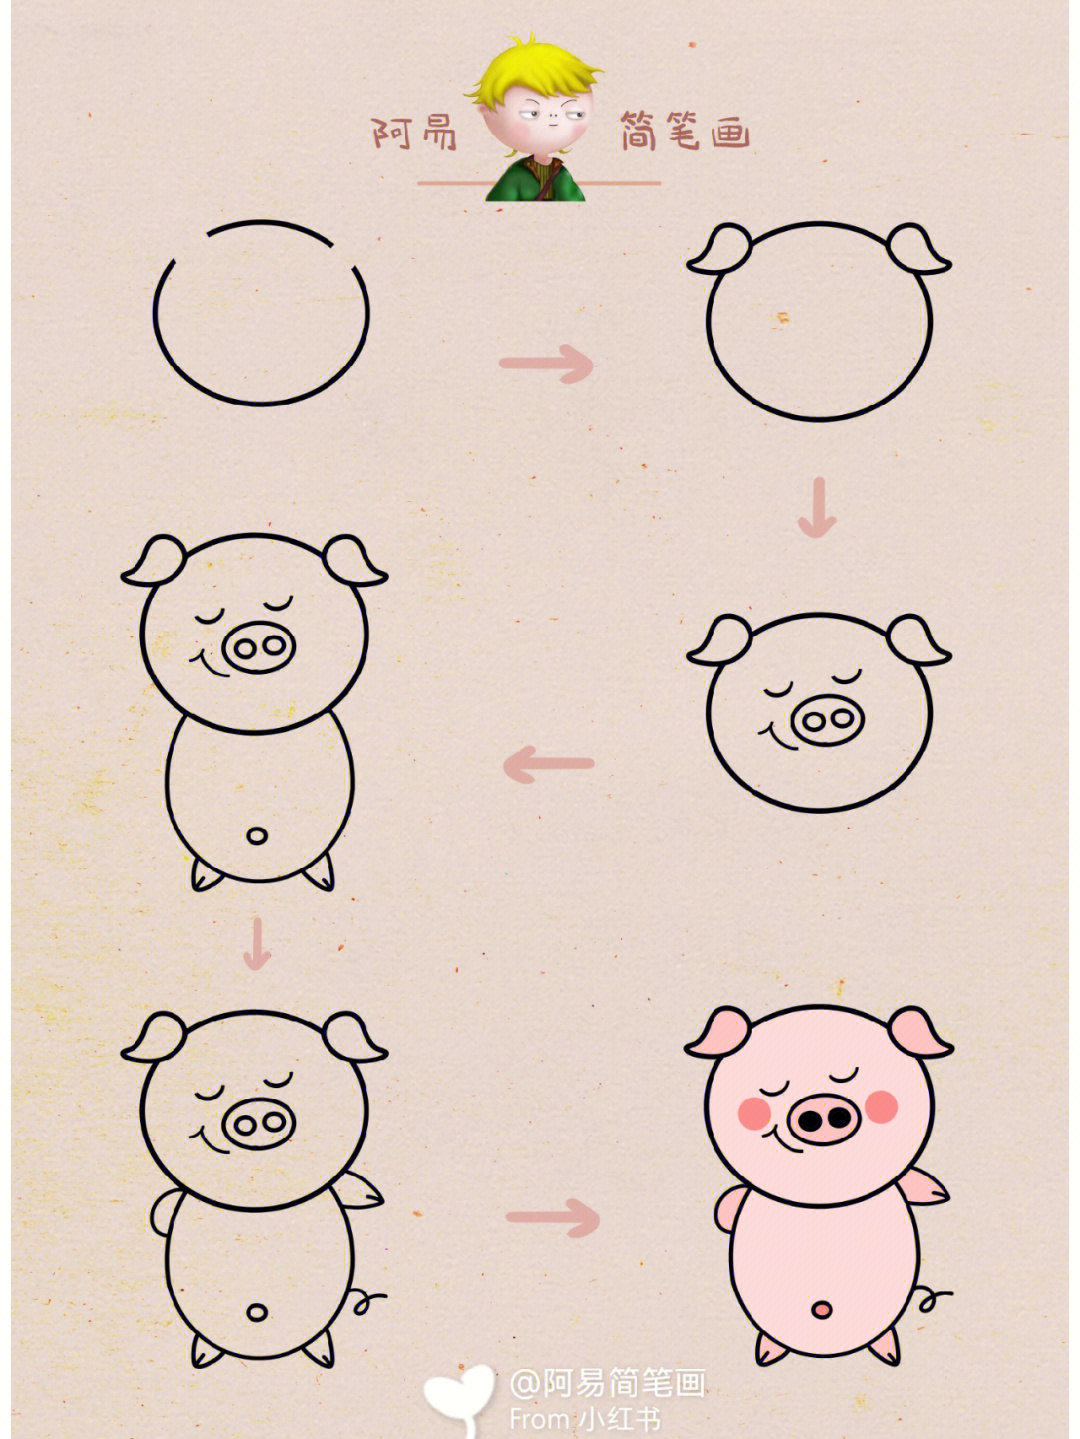 猪的简易画法图片